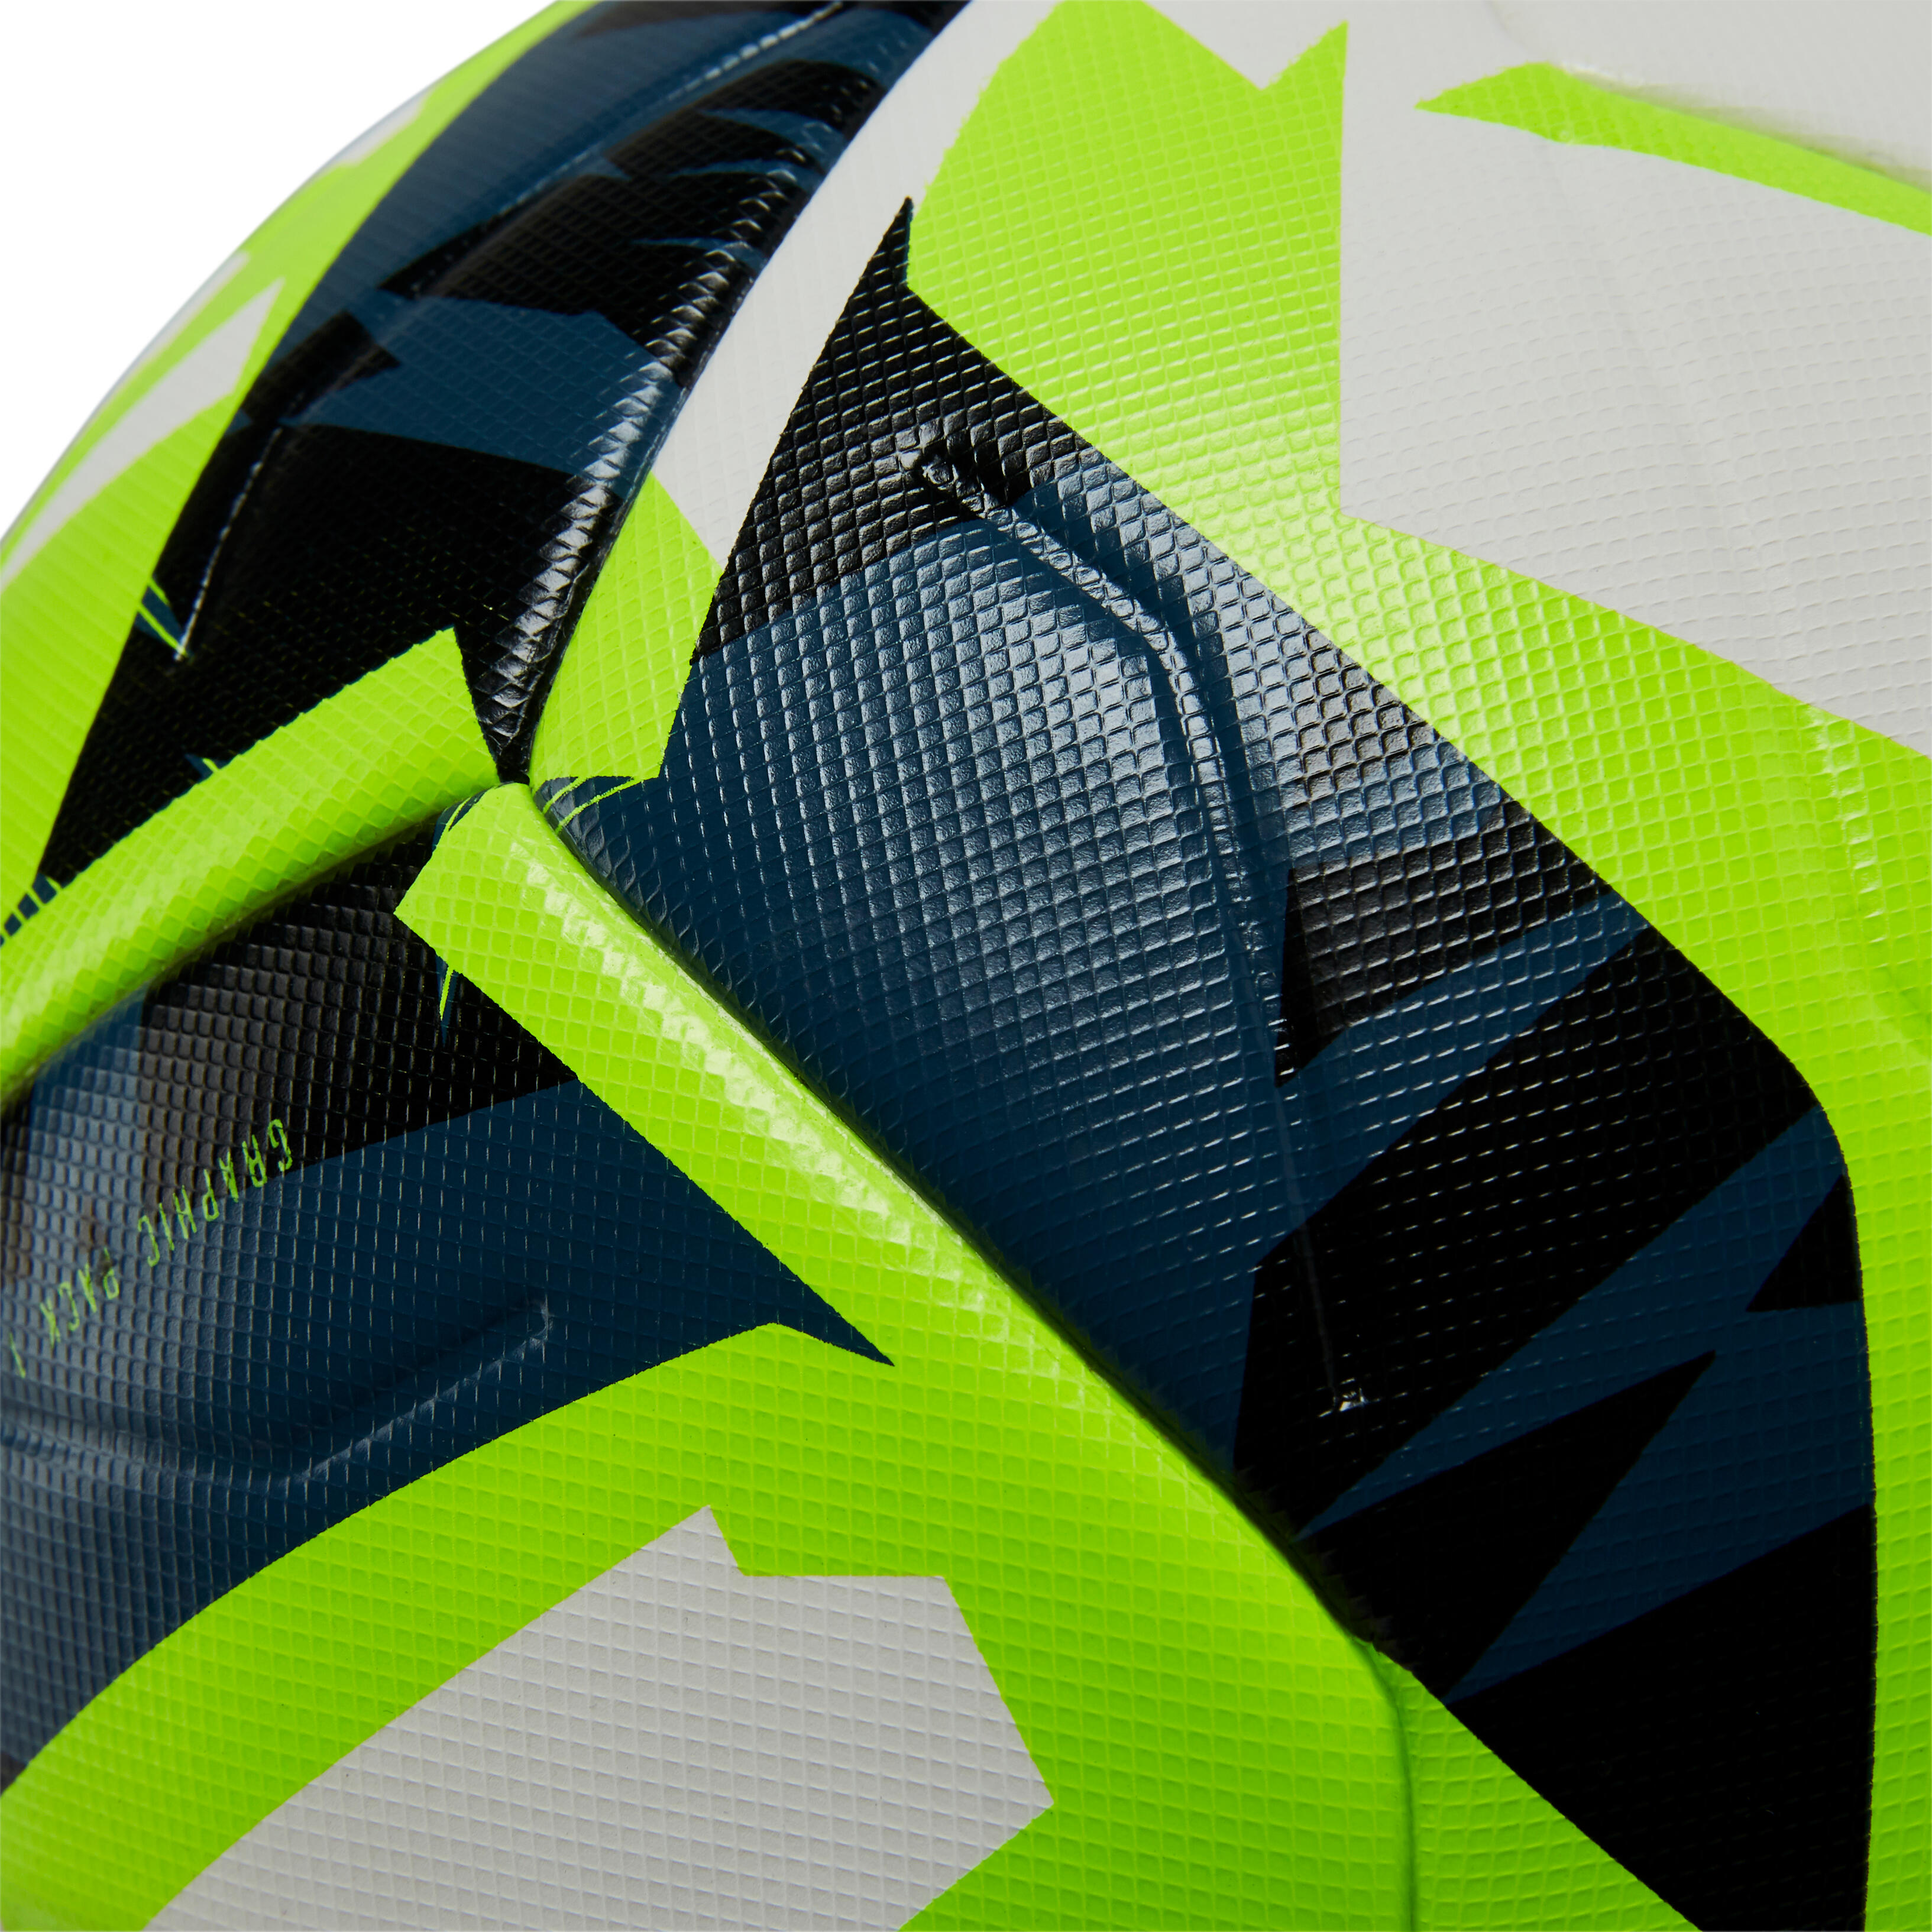 Ballon de soccer F 900 taille 5 - KIPSTA